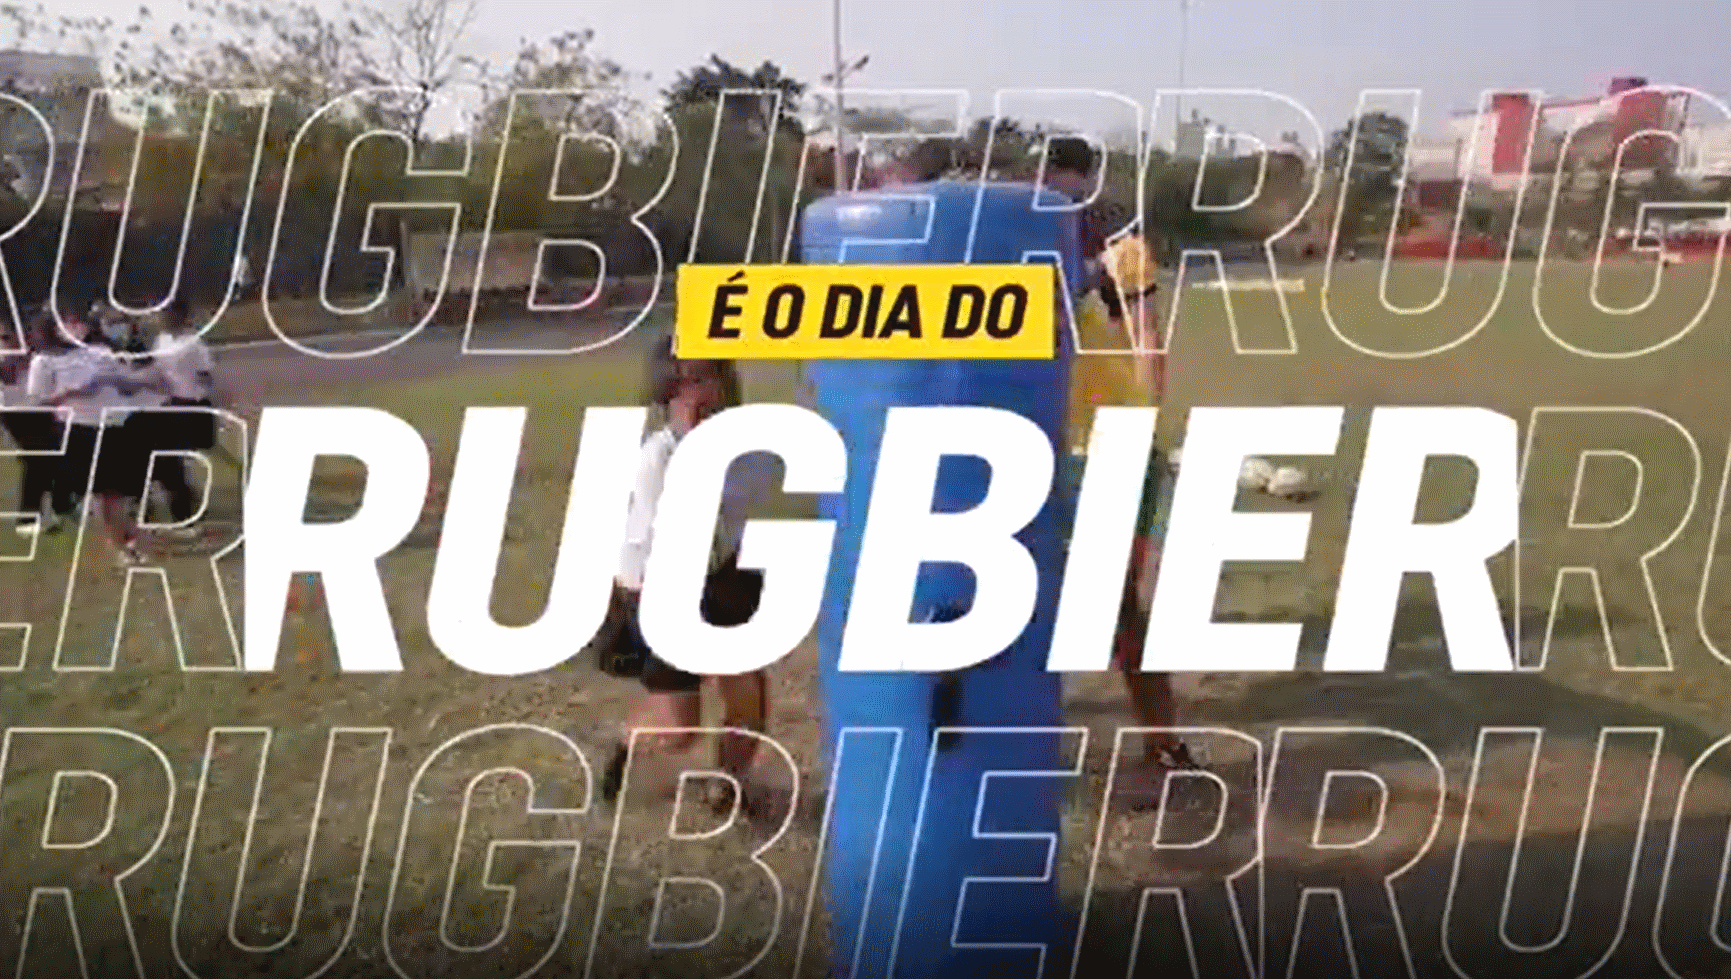 Brasil Rugby faz homenagem e estabelece 20 de setembro como ‘Dia do Rugbier’ no Brasil